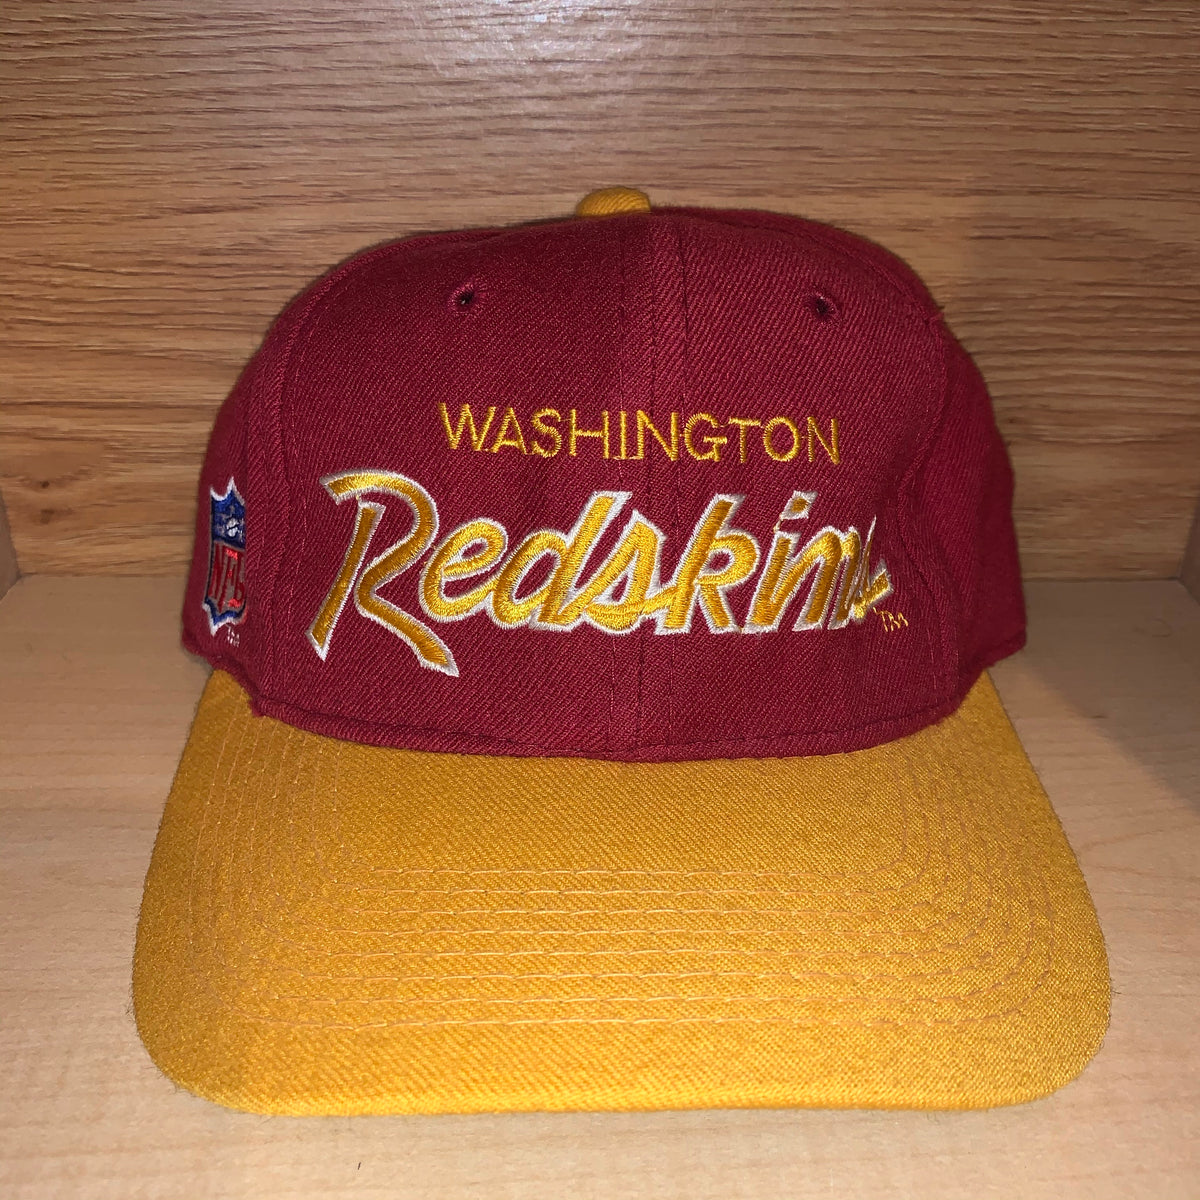 redskins hats for sale